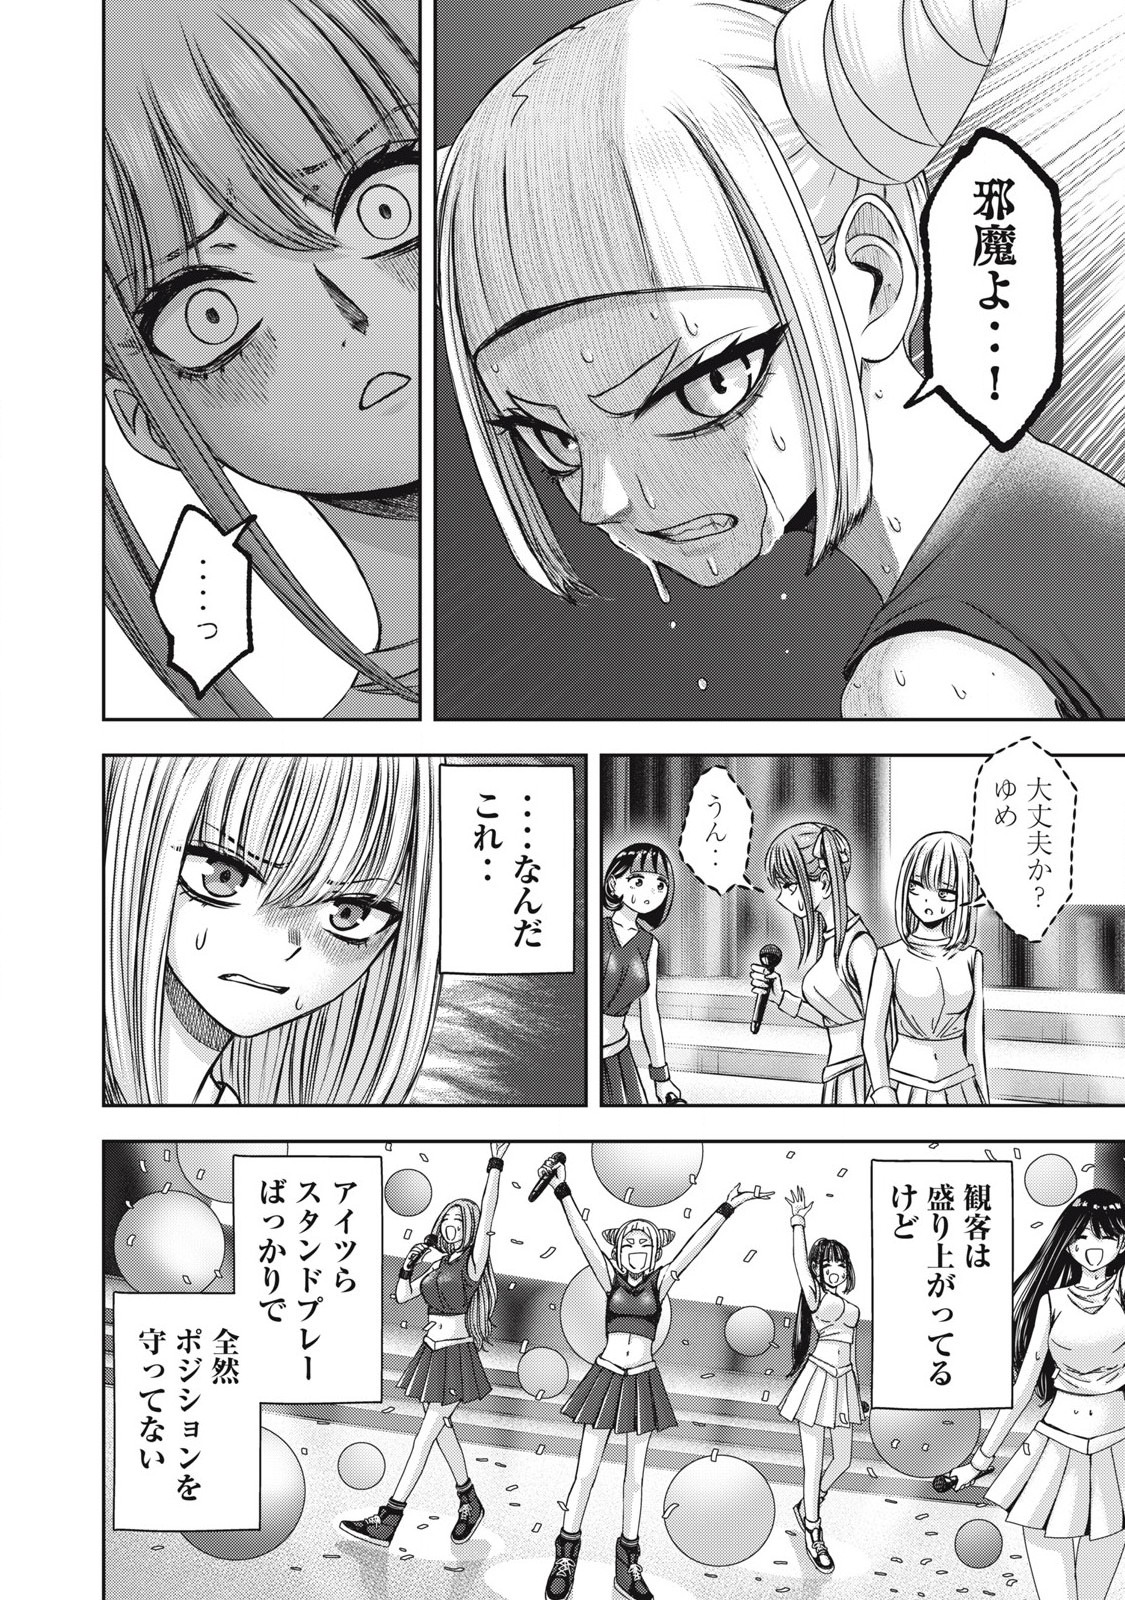 Watashi no Arika - Chapter 58 - Page 4